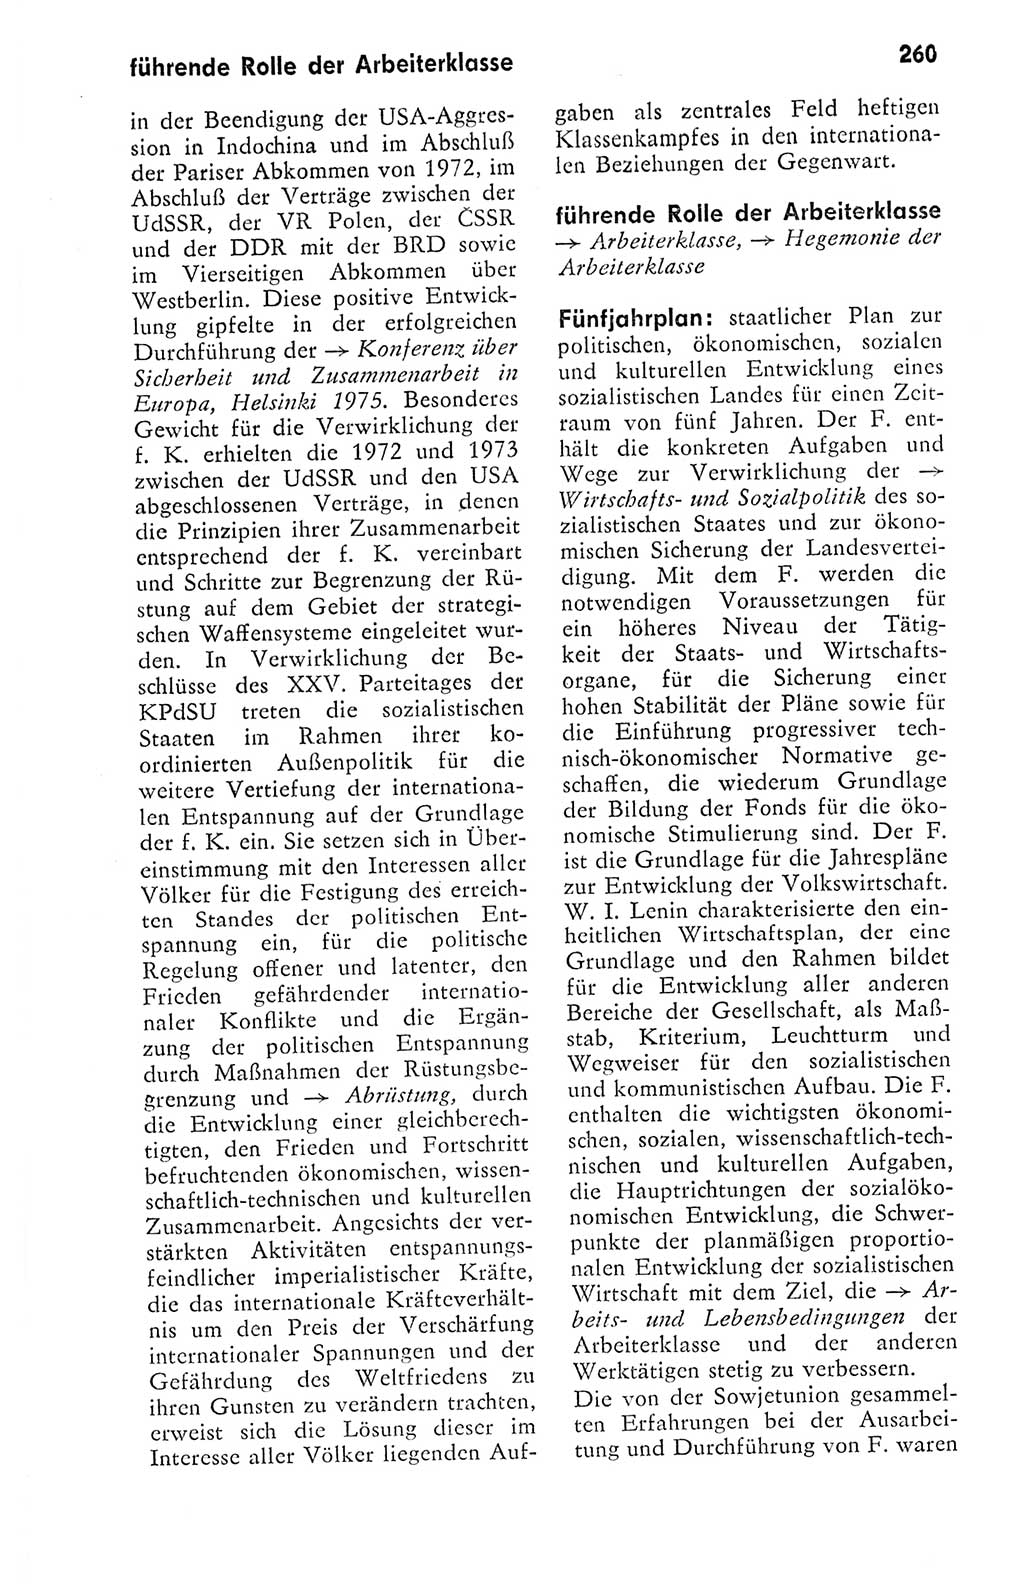 Kleines politisches Wörterbuch [Deutsche Demokratische Republik (DDR)] 1978, Seite 260 (Kl. pol. Wb. DDR 1978, S. 260)